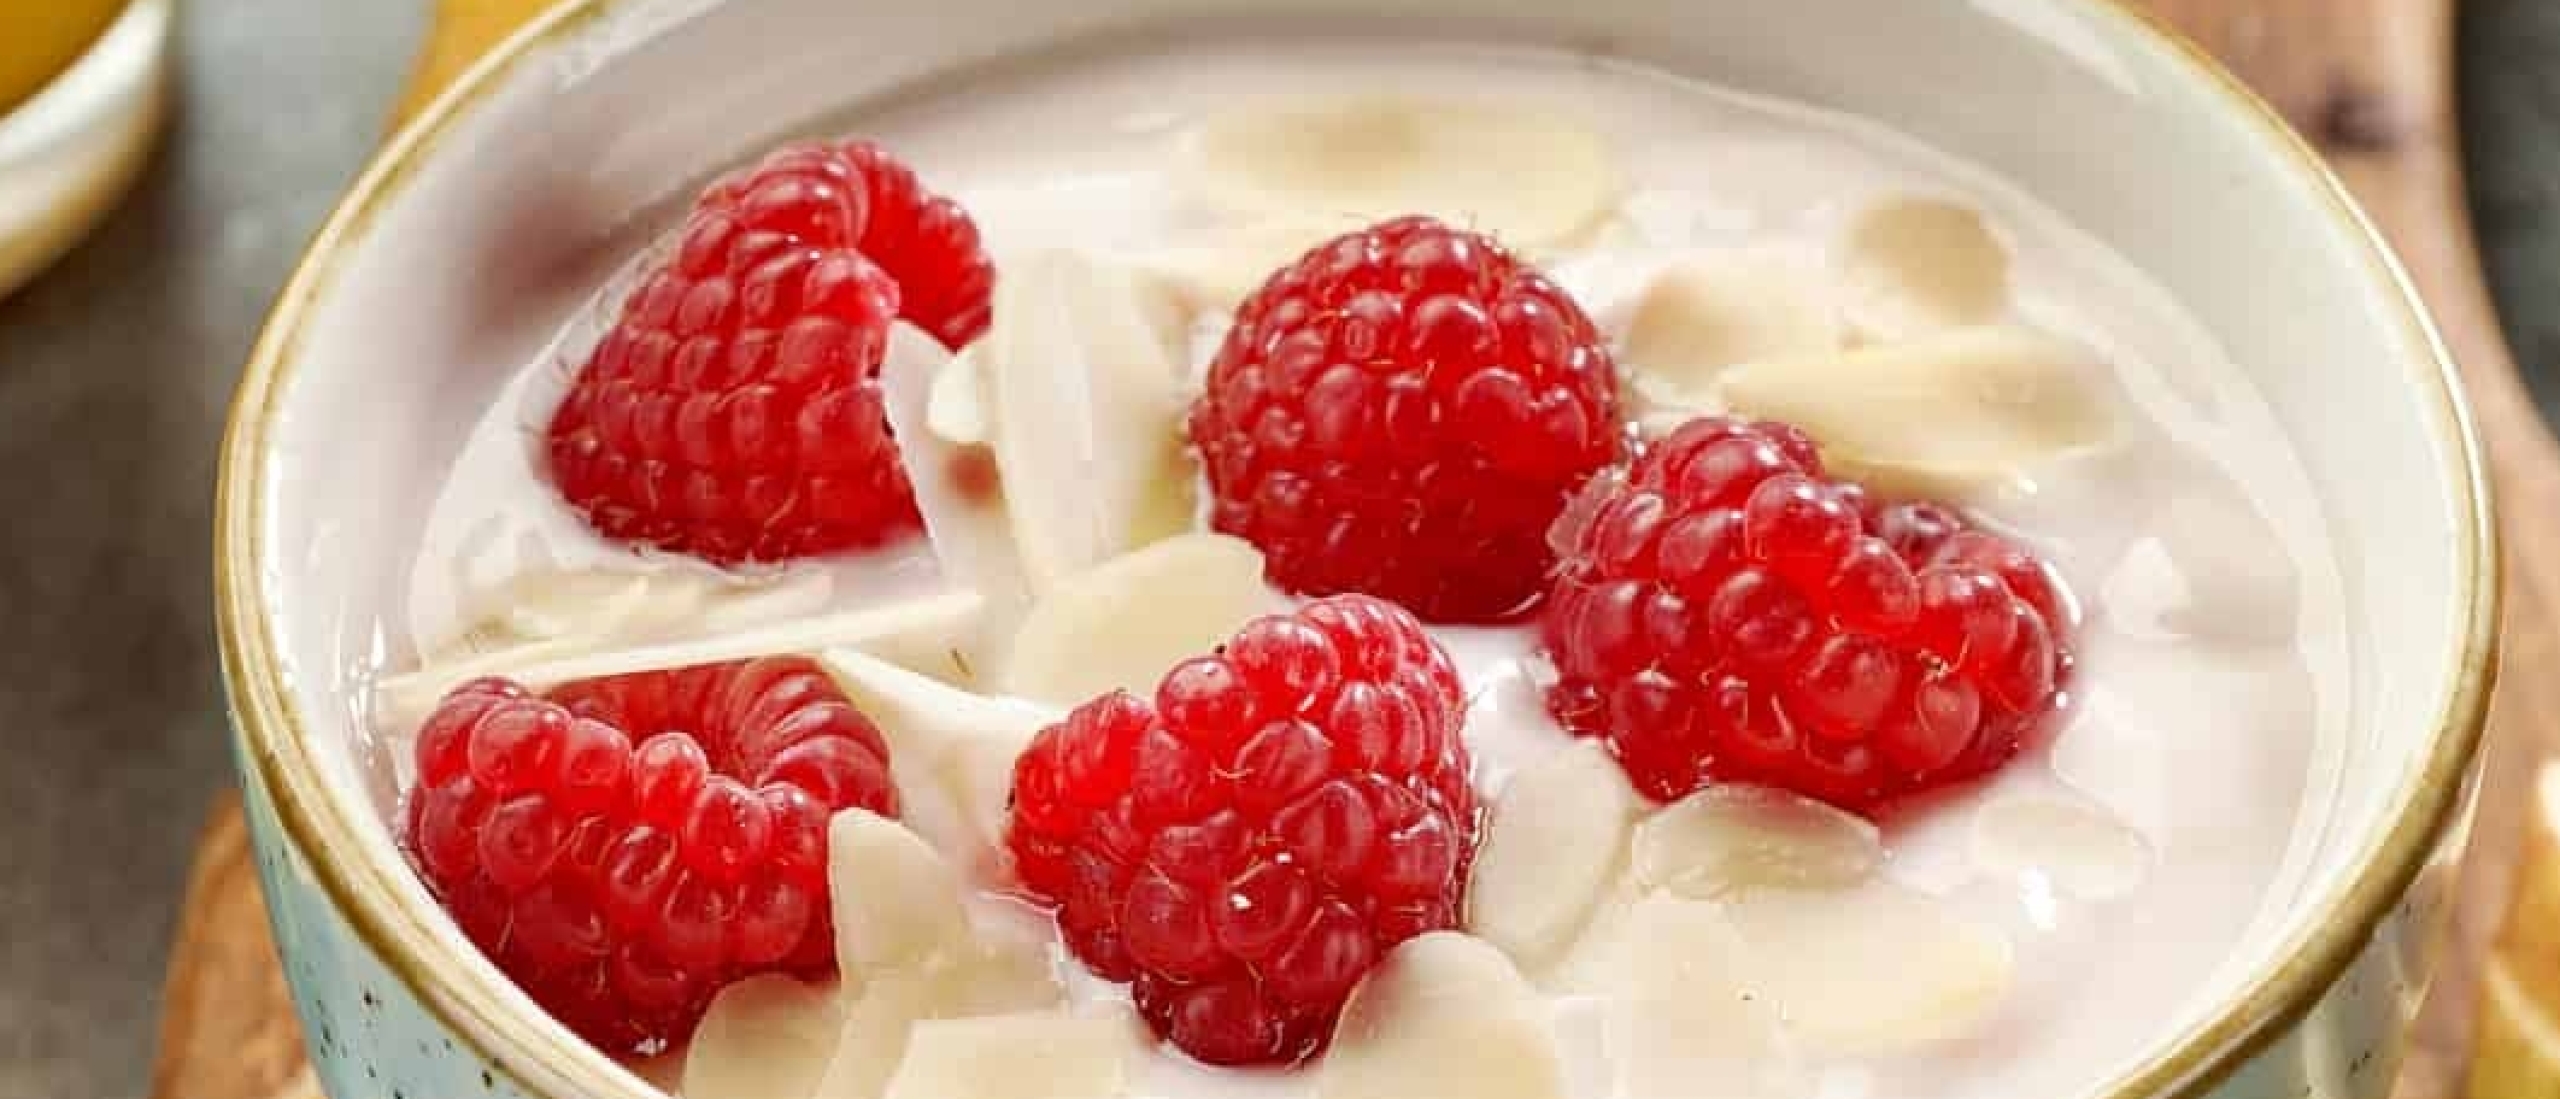 griekse-yoghurt-met-frambozen